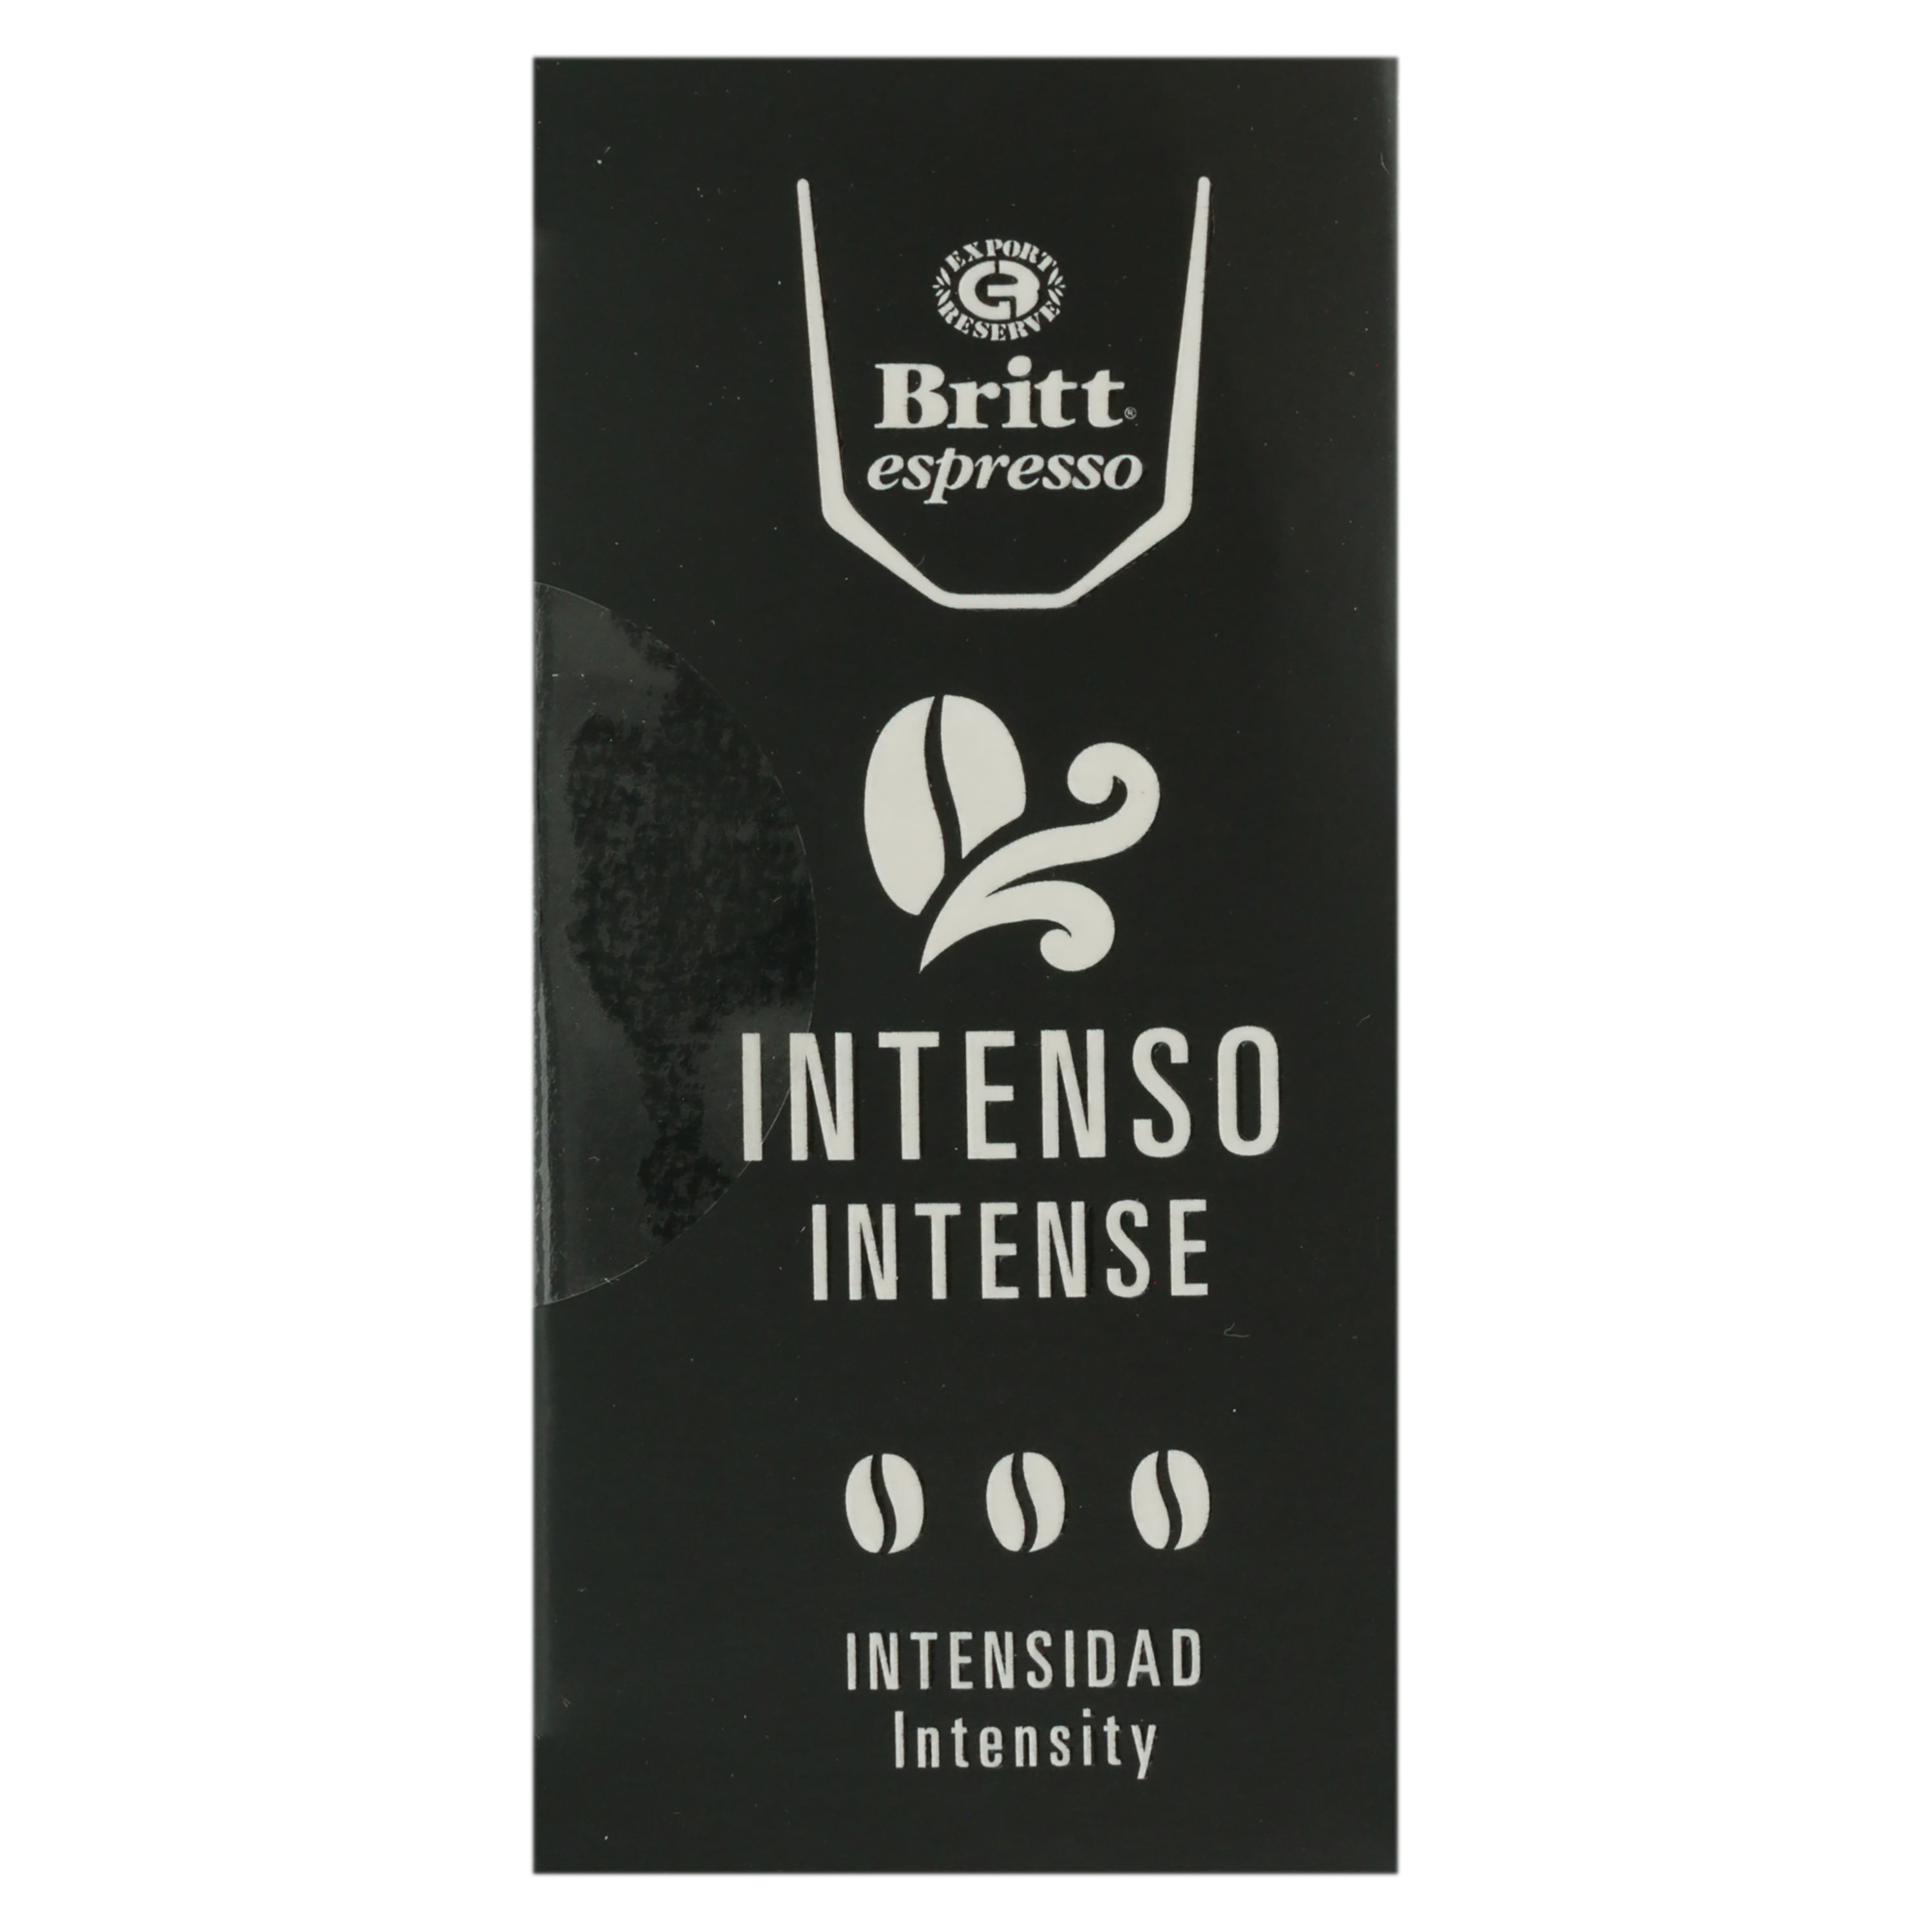 Britt Espresso Intenso